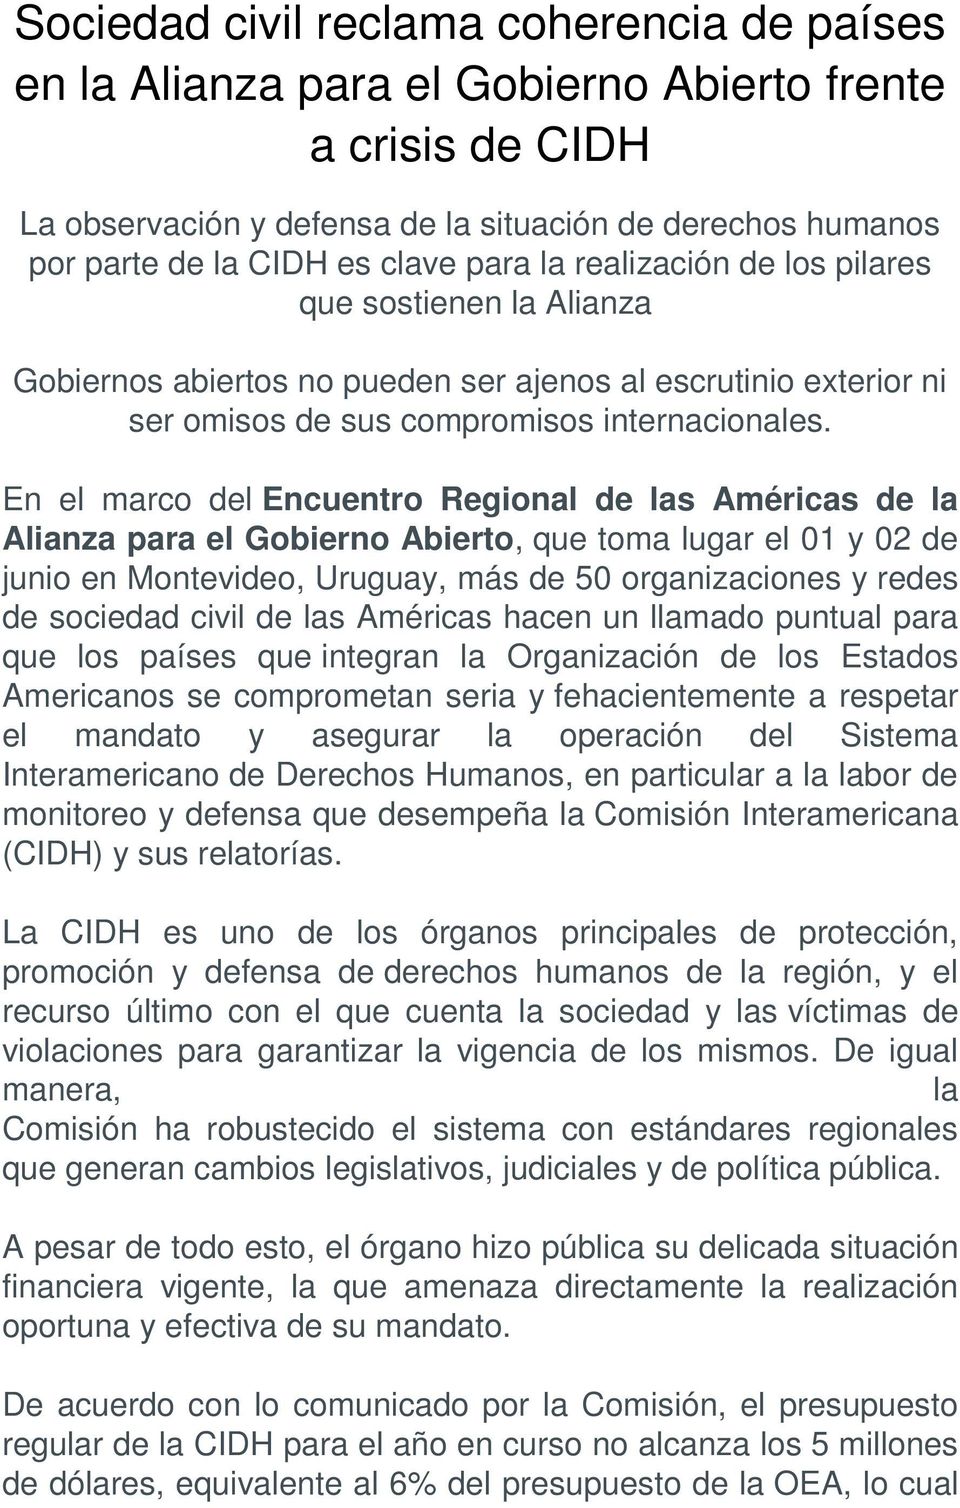 En el marco del Encuentro Regional de las Américas de la Alianza para el Gobierno Abierto, que toma lugar el 01 y 02 de junio en Montevideo, Uruguay, más de 50 organizaciones y redes de sociedad